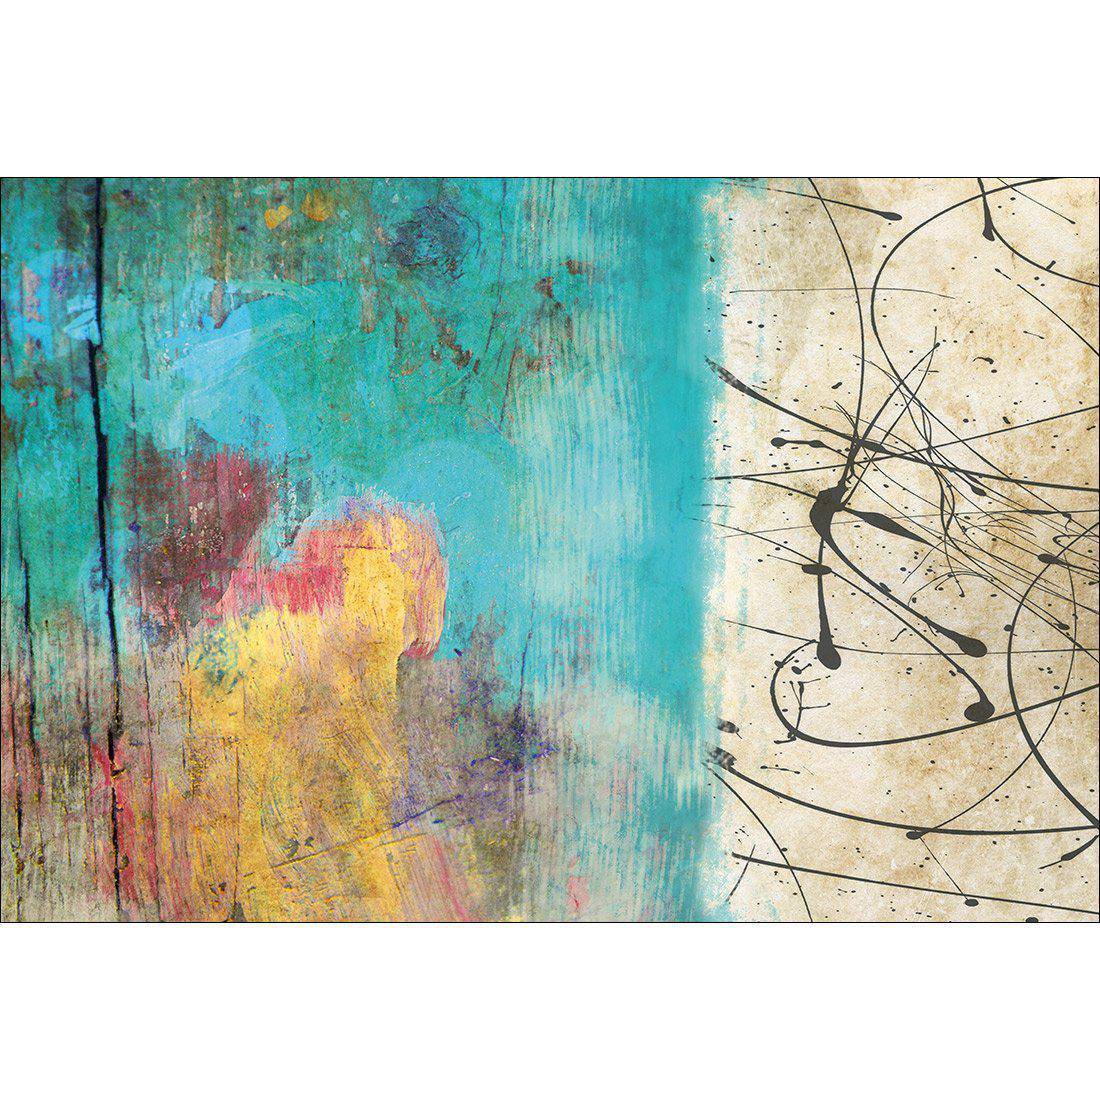 Painted Grunge Splatter Canvas Art-Canvas-Wall Art Designs-45x30cm-Canvas - No Frame-Wall Art Designs